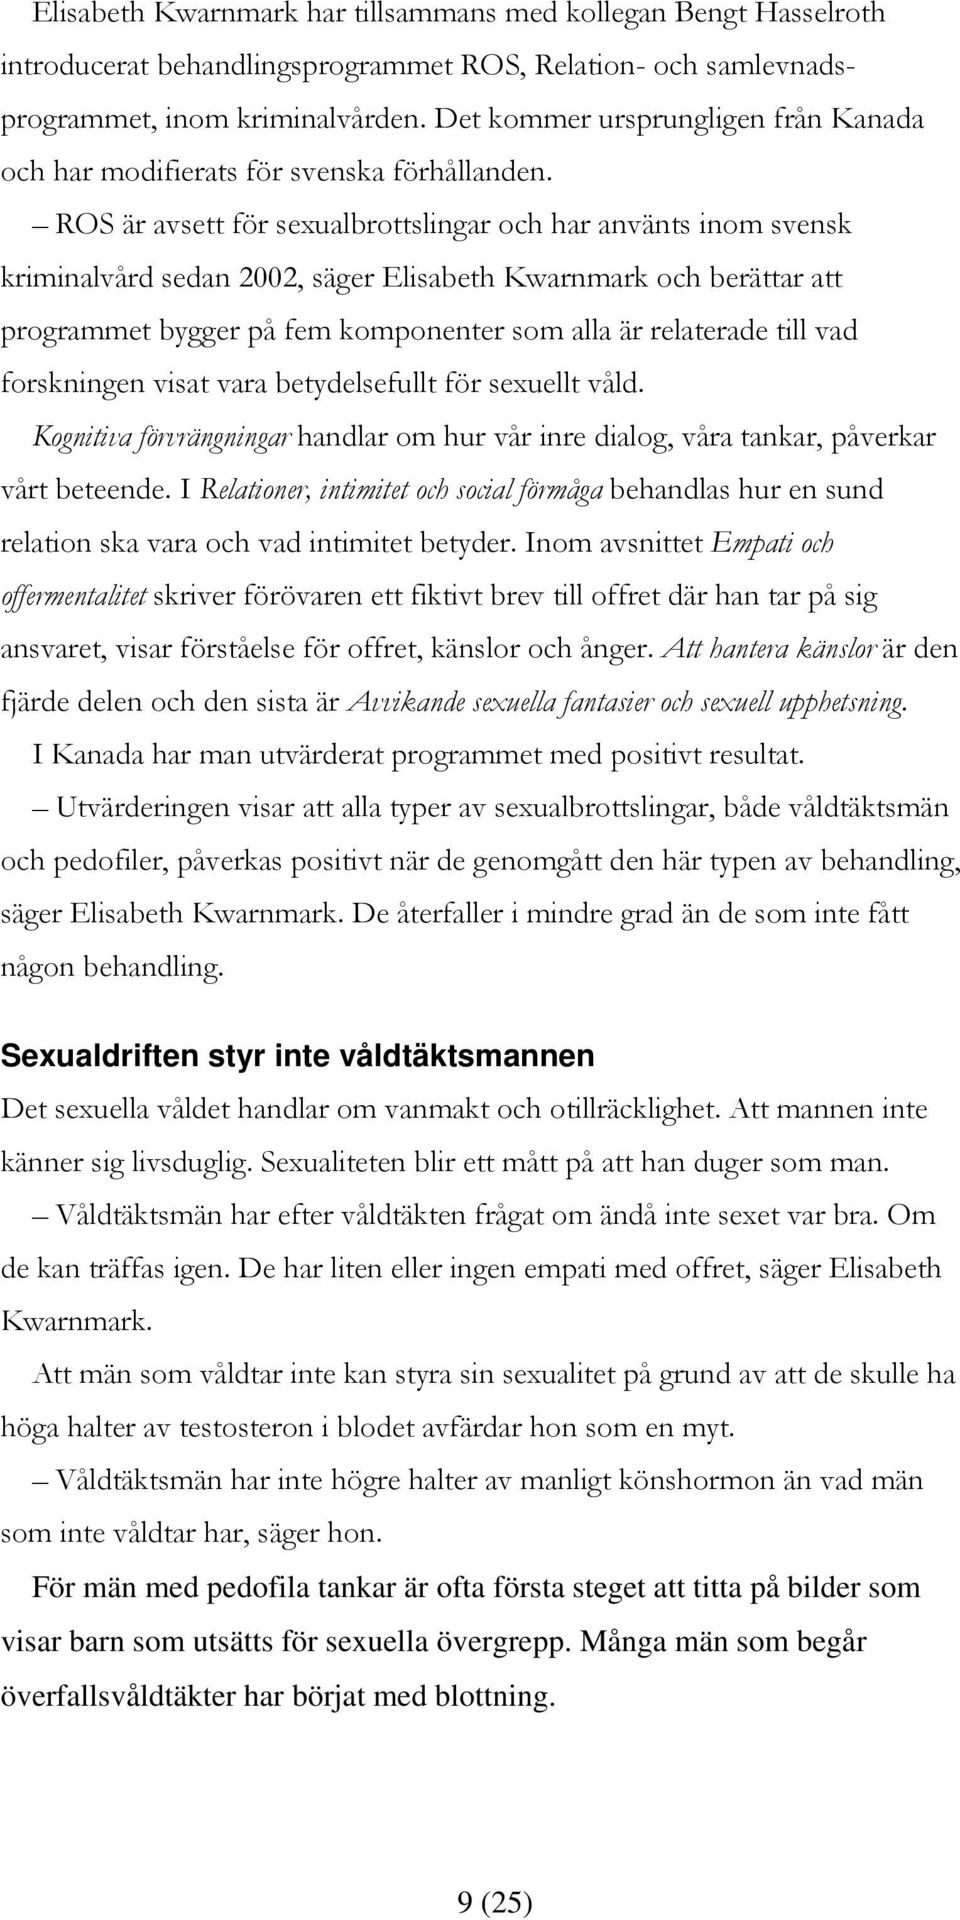 ROS är avsett för sexualbrottslingar och har använts inom svensk kriminalvård sedan 2002, säger Elisabeth Kwarnmark och berättar att programmet bygger på fem komponenter som alla är relaterade till